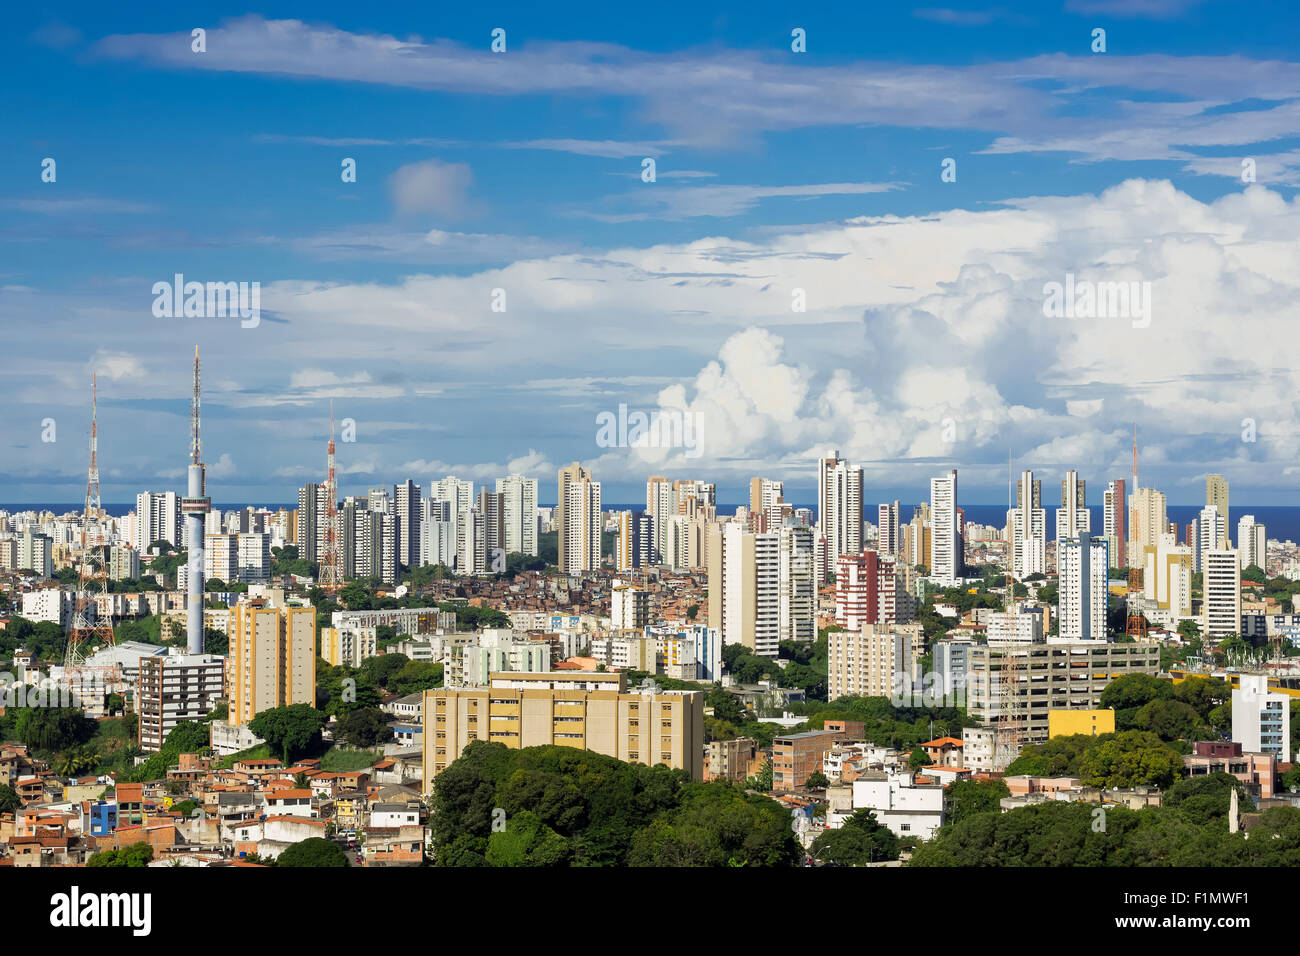 Salvador cityscape, Bahia, Brazil. Stock Photo